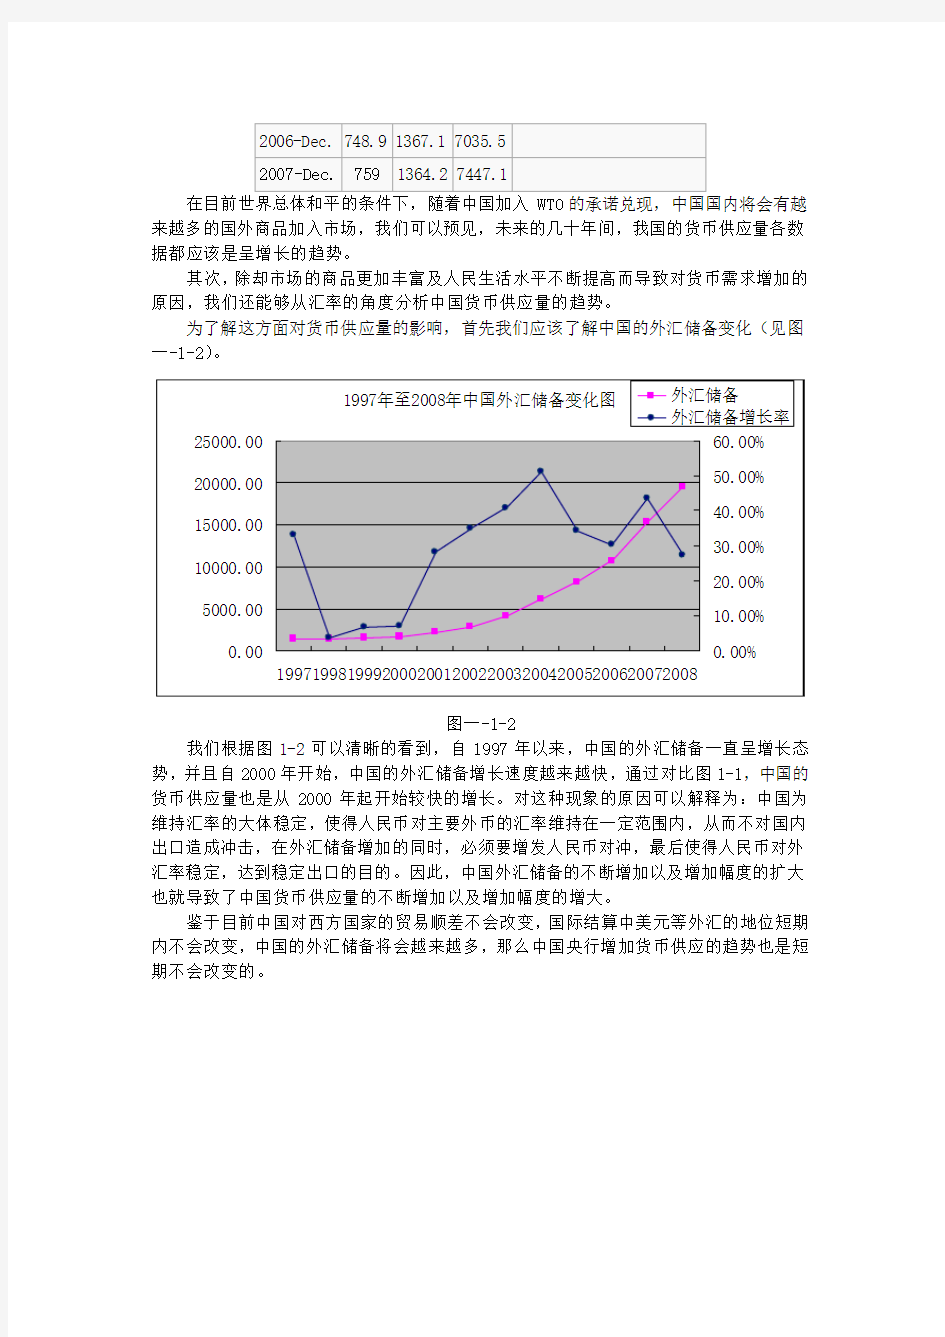 1997年至2008年中国货币供应量分析